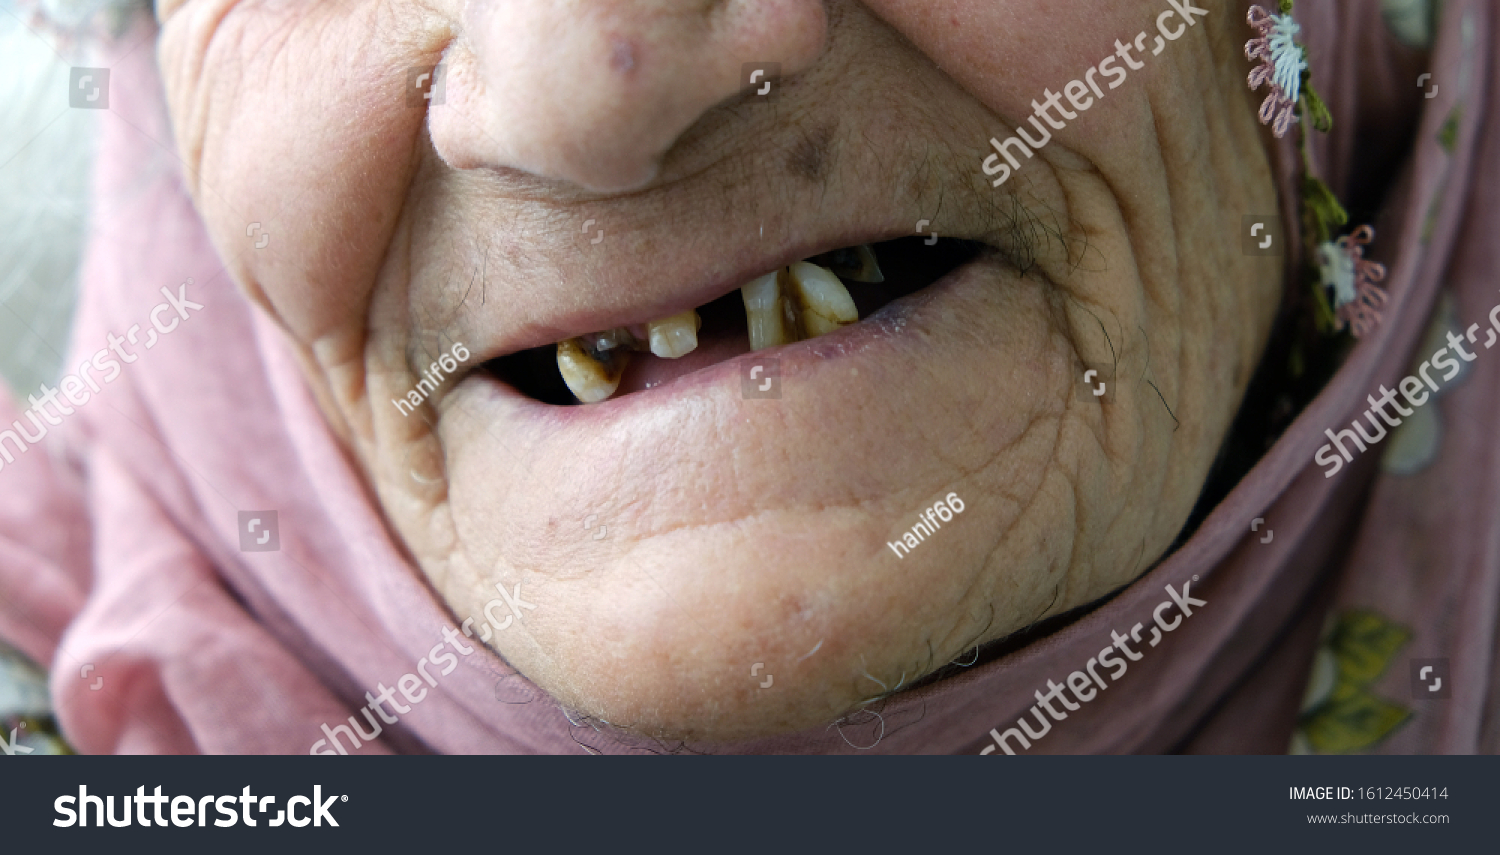 ahmed al khaled add no teeth old lady photo